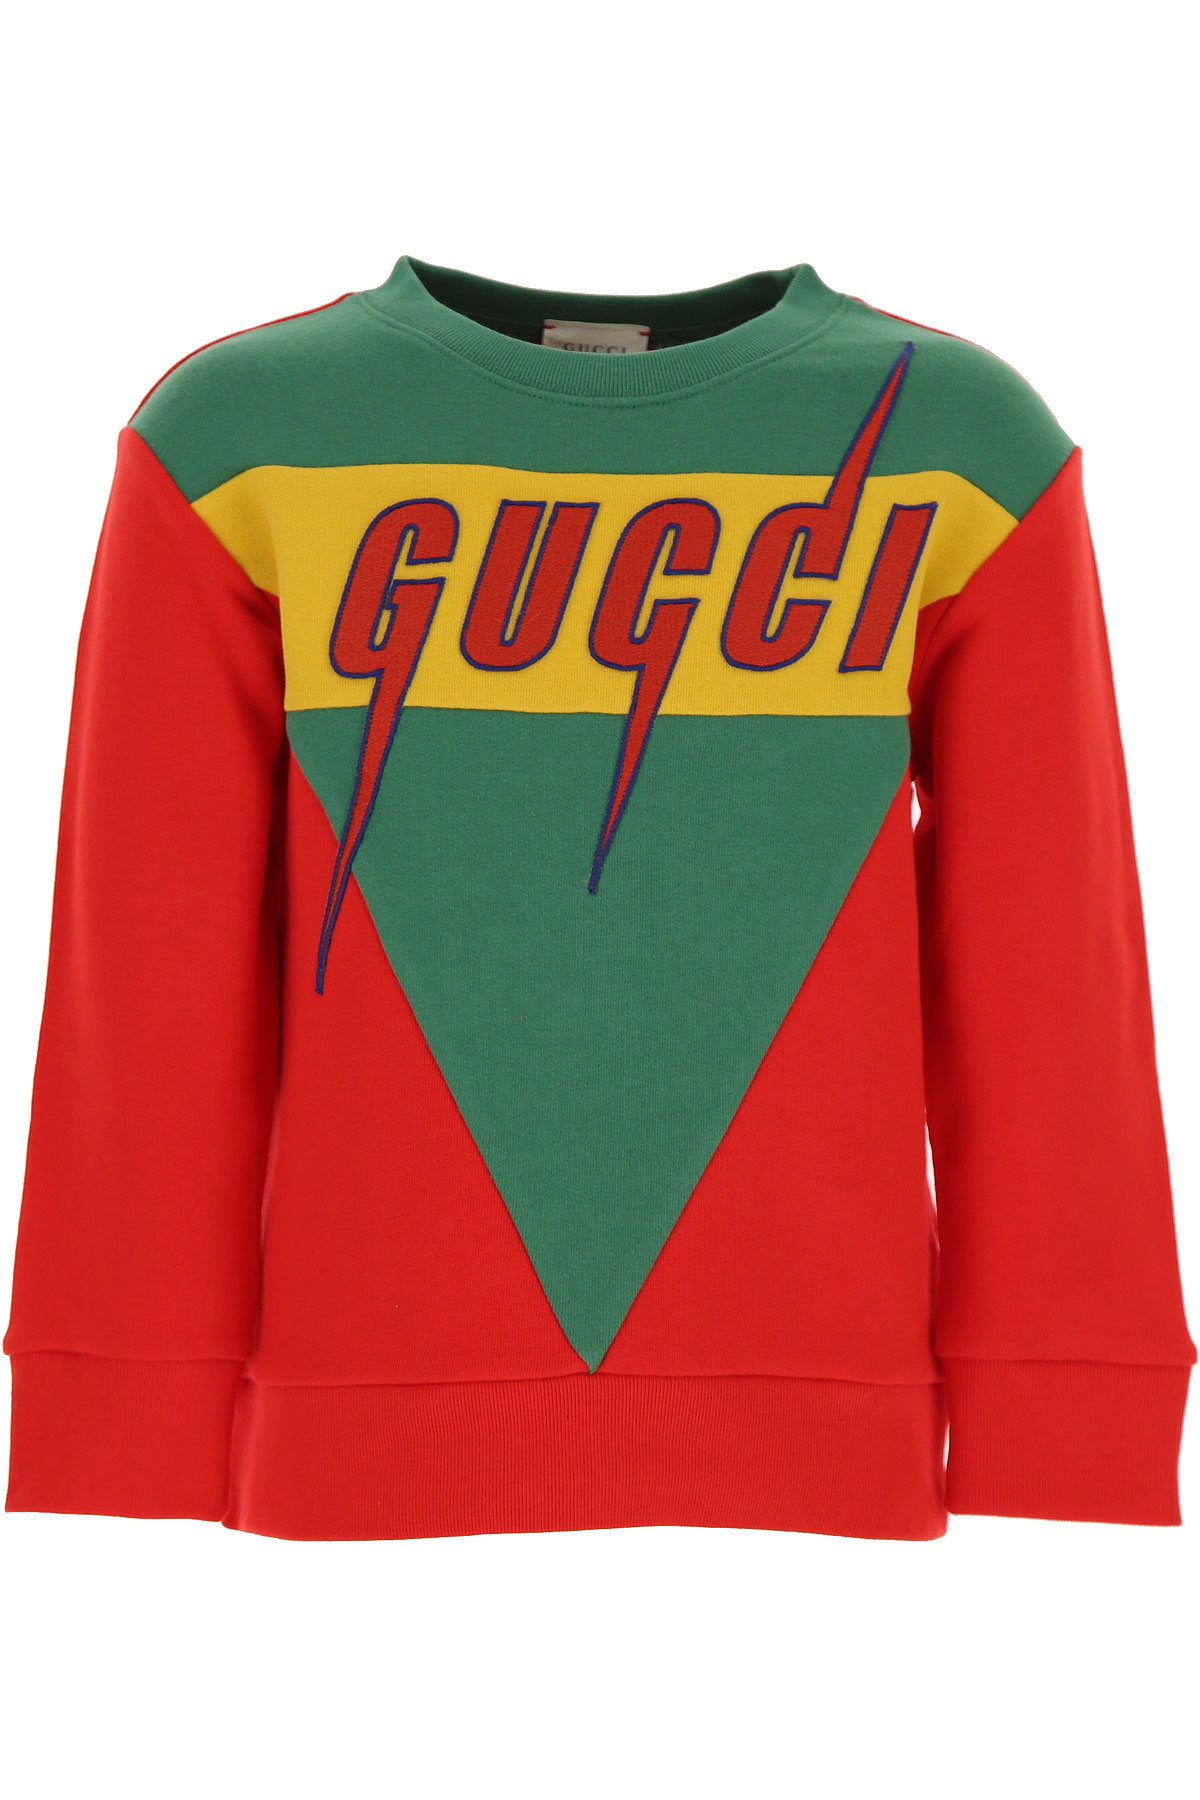 Gucci Kinder Sweatshirt & Kapuzenpullover für Jungen Günstig im Sale, Grün, Baumwolle, 2017, 4Y 6Y